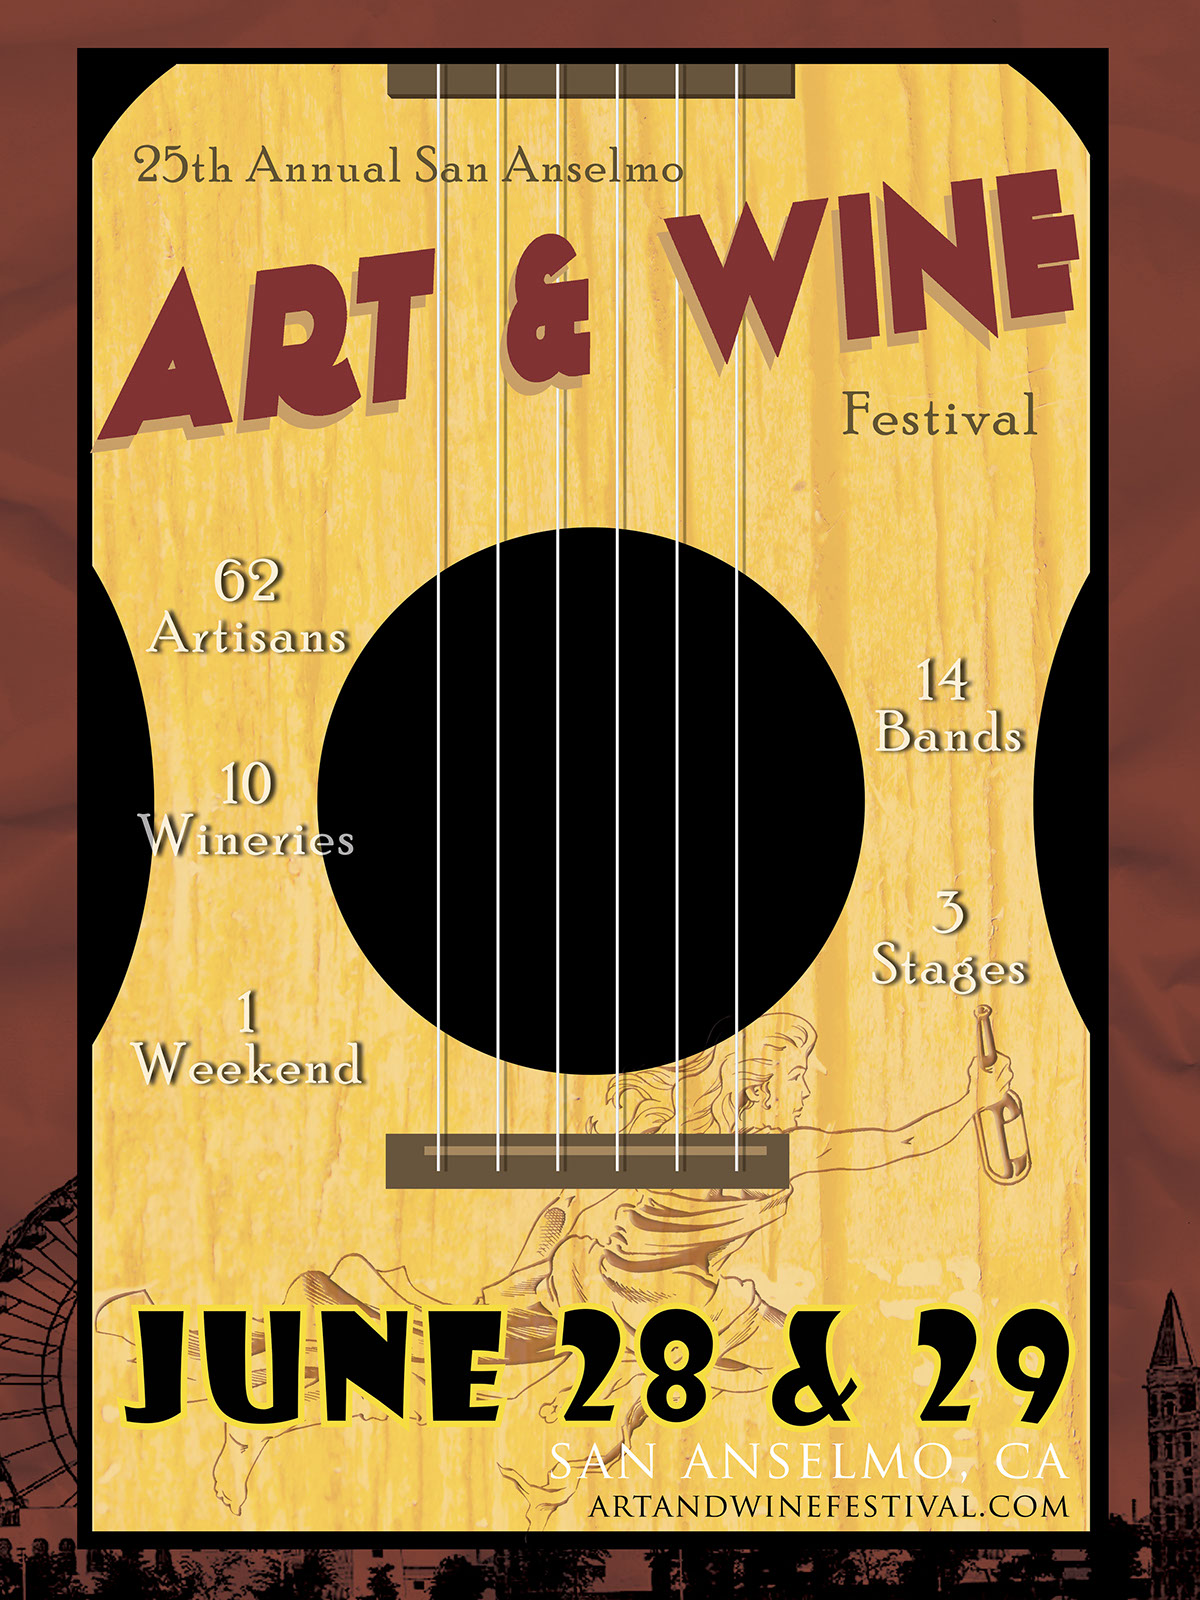 San Anselmo art wine festival street fair poster Fillmore